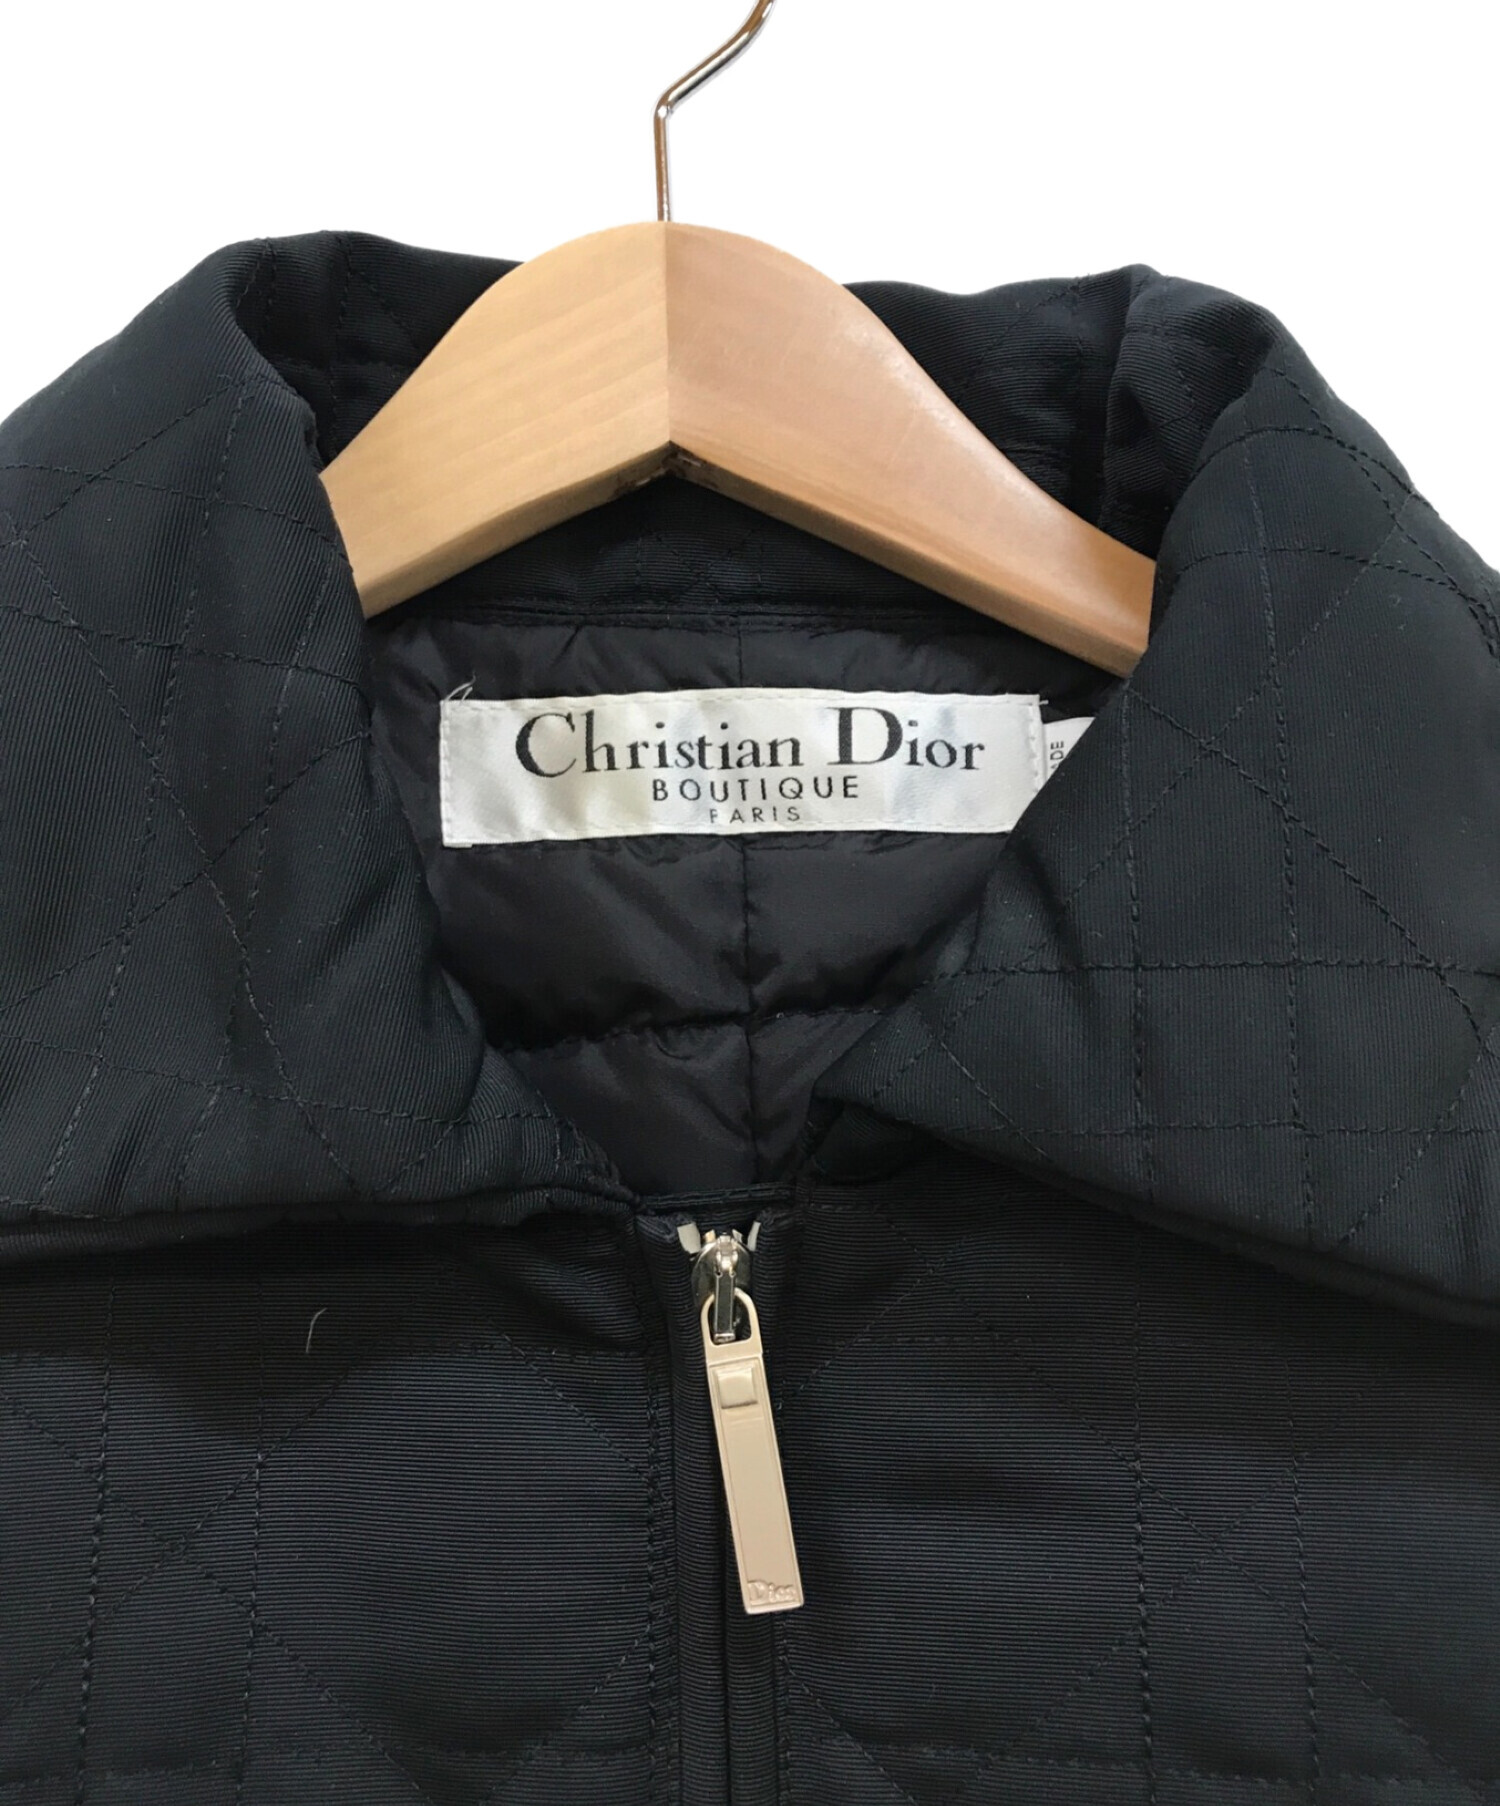 Christian Dior BOUTIQUE (クリスチャン ディオールブティック) キルティングジャケット ブラック サイズ:36